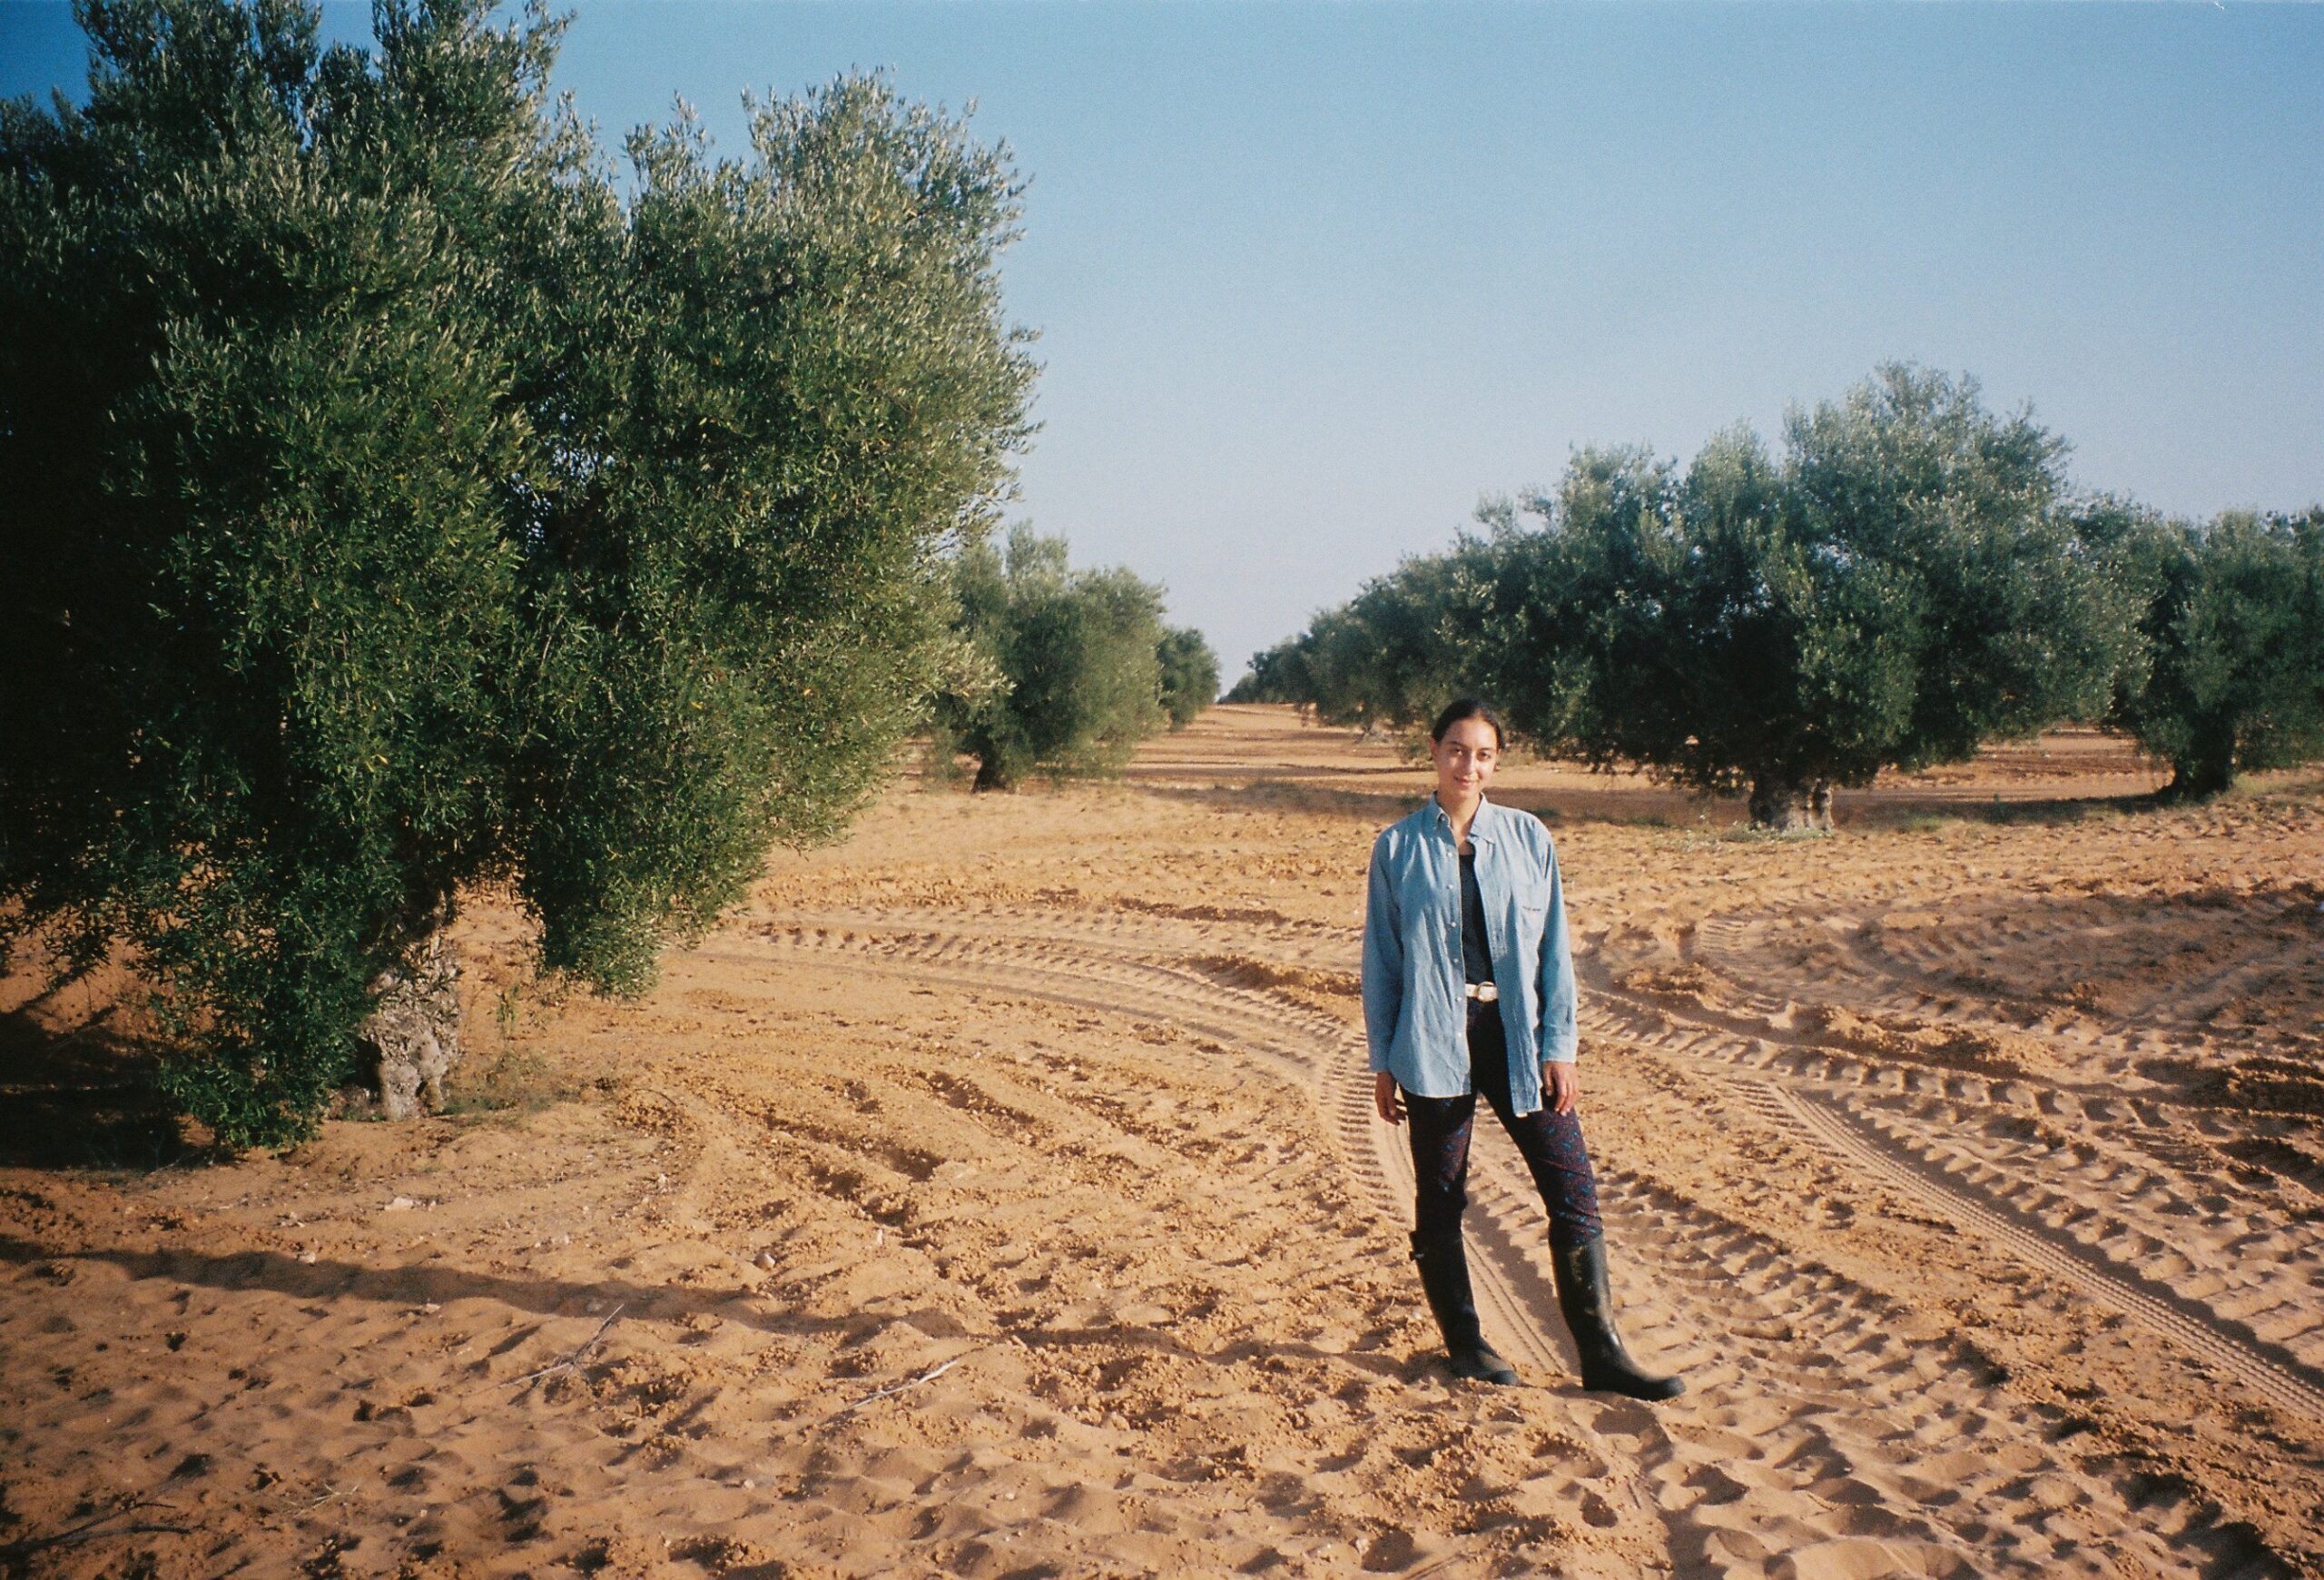 Sarad Ben Romdane in her family farm in Tunisia